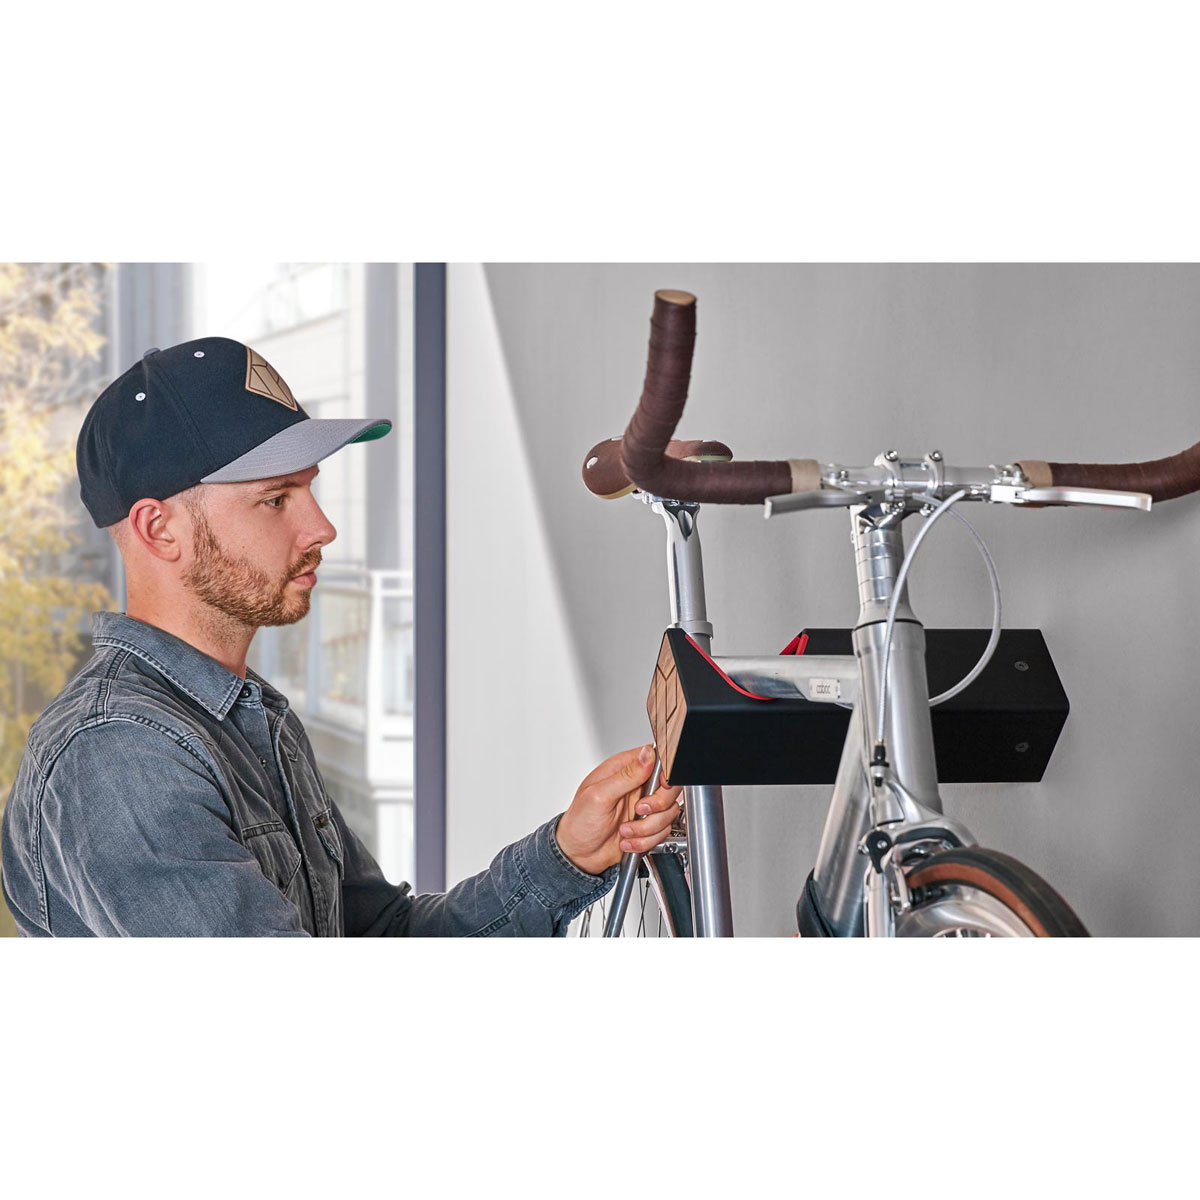 Soporte de pared para bicicletas - Madera y aluminio - Plata